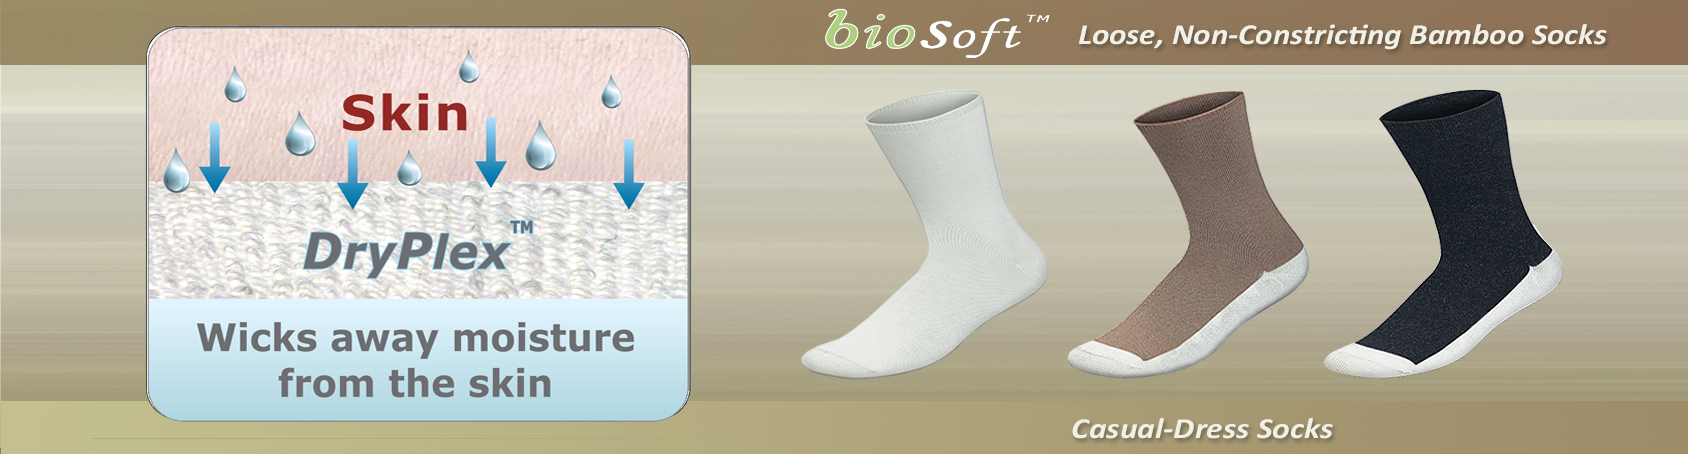 Seam Free Socks, Diabetic socks, Extra wide socks | Orthofeet